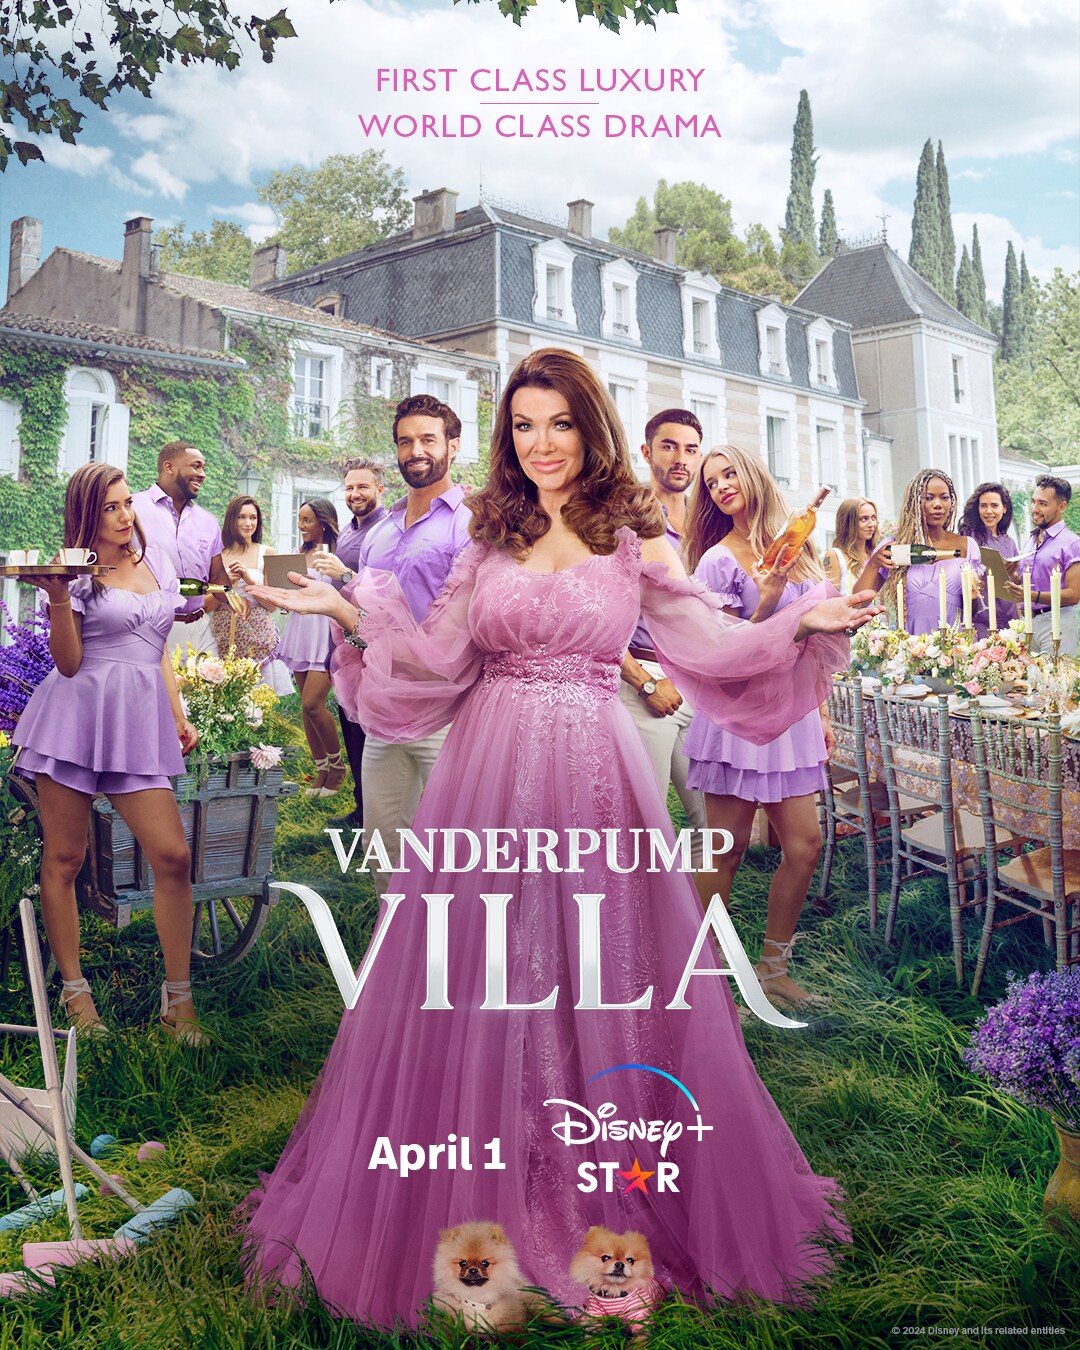 Vanderpump Villa is now streaming on Disney+